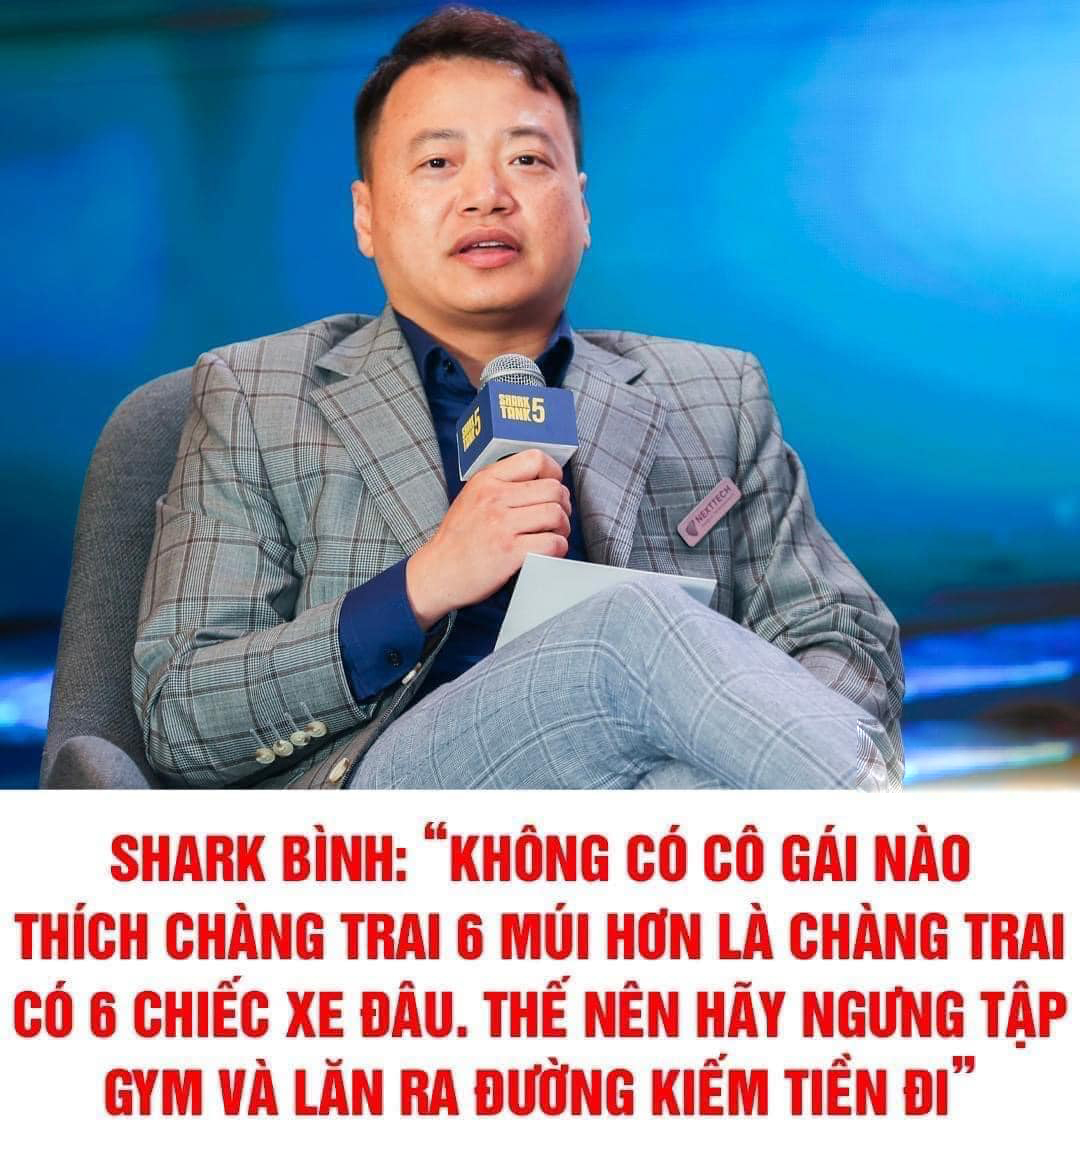 Phát ngôn của Shark Bình bất ngờ “hot” trở lại khiến cư dân mạng tranh luận.